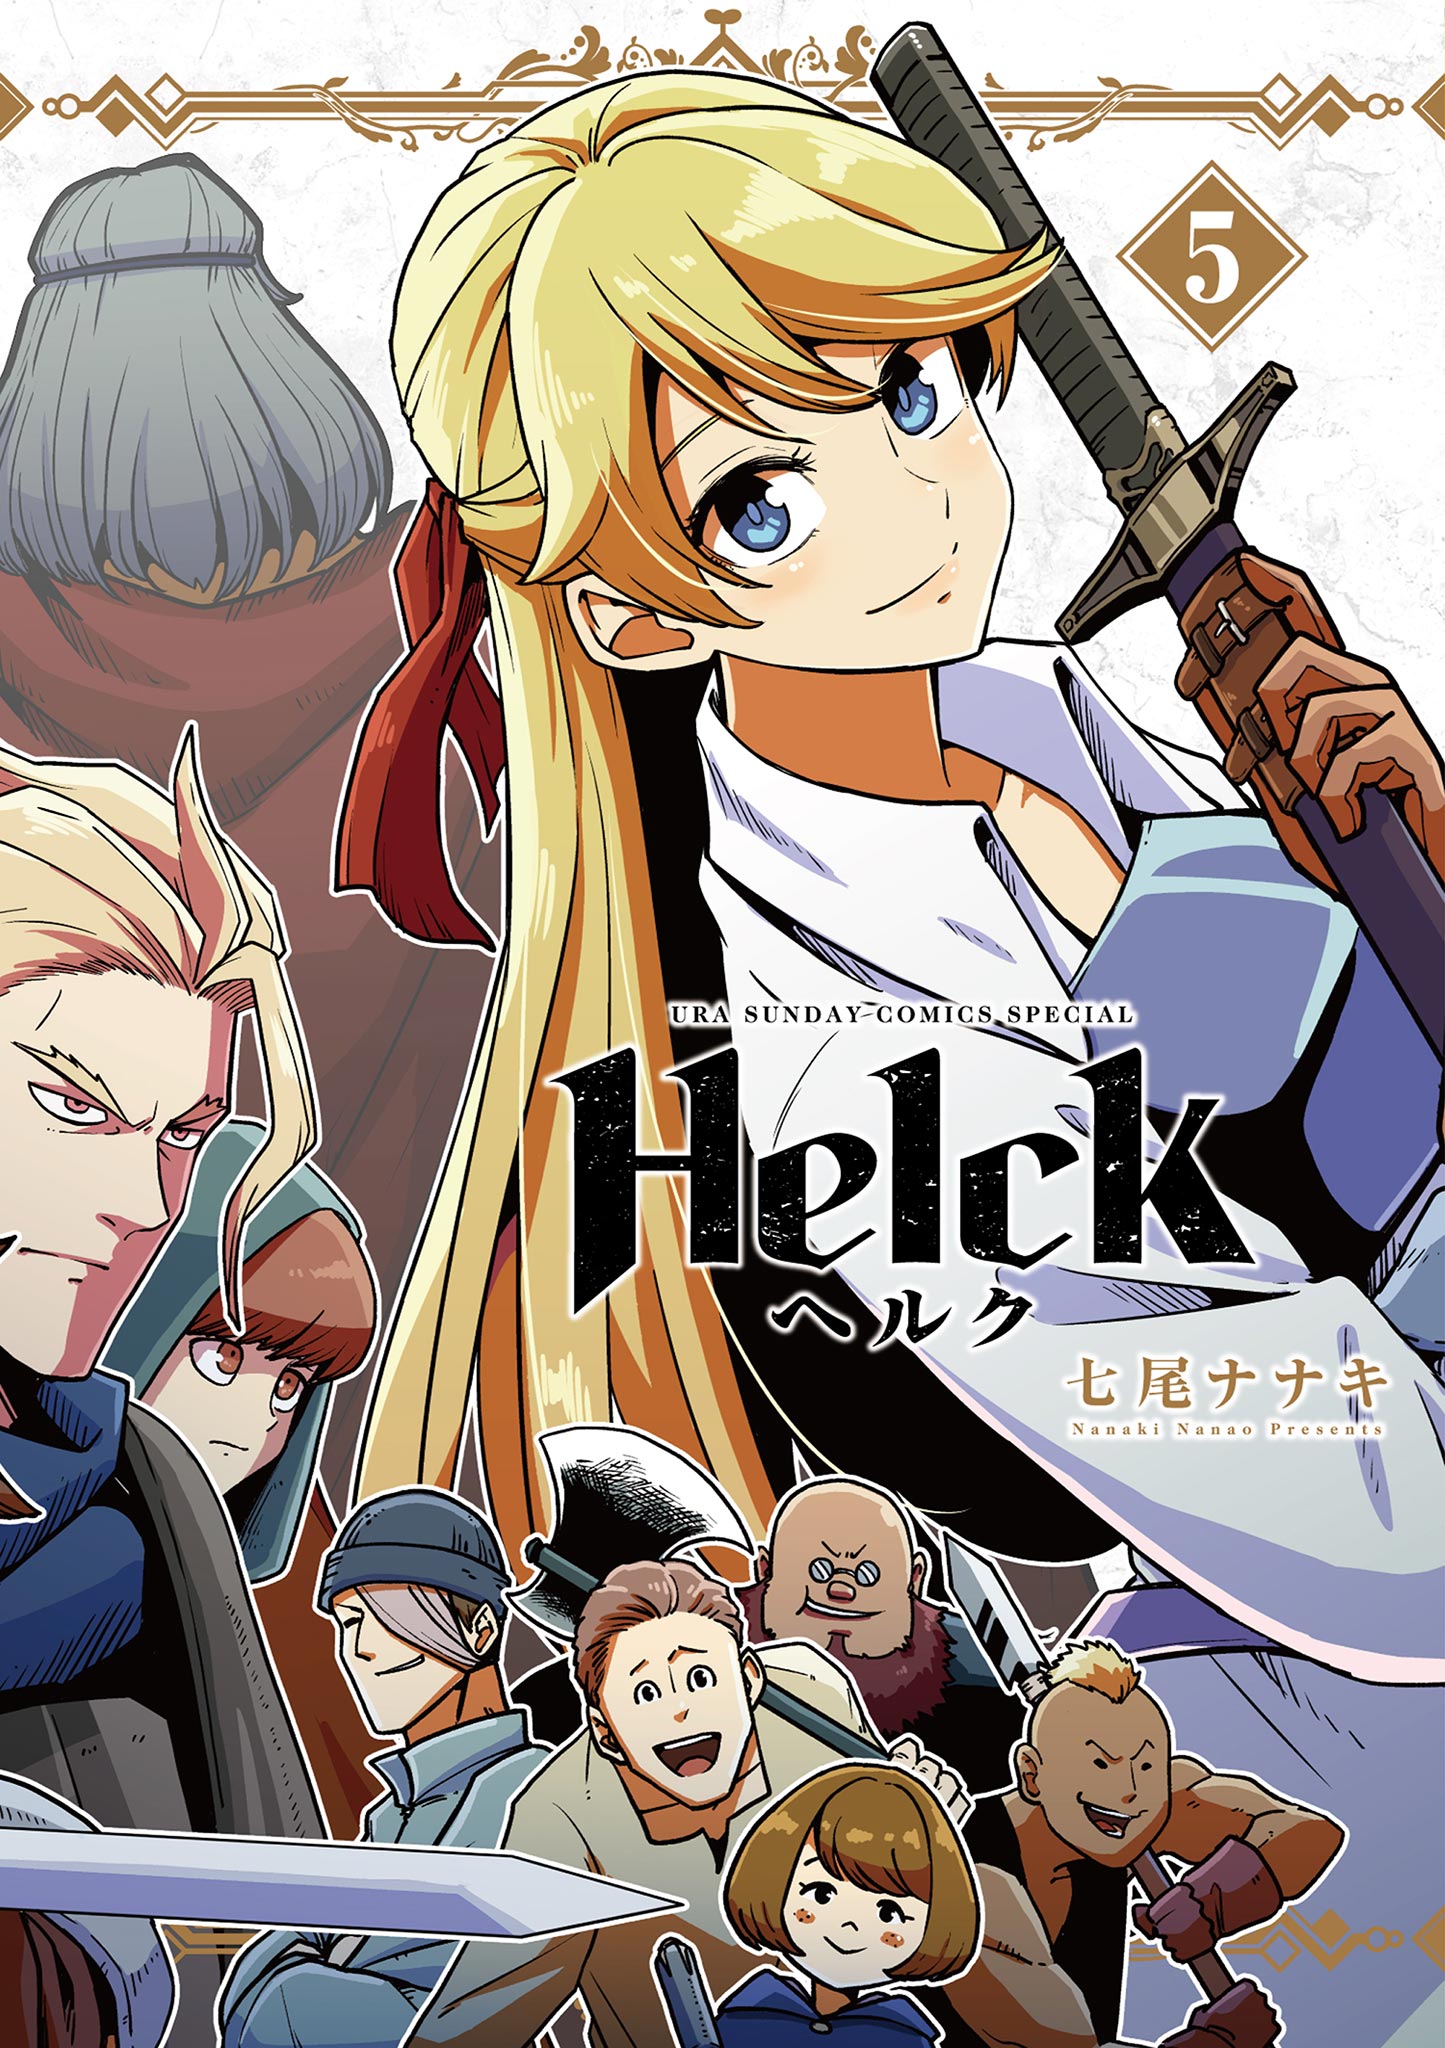 Helck 新装版 (全巻) 電子書籍版 / 七尾ナナキ - コミック、アニメ